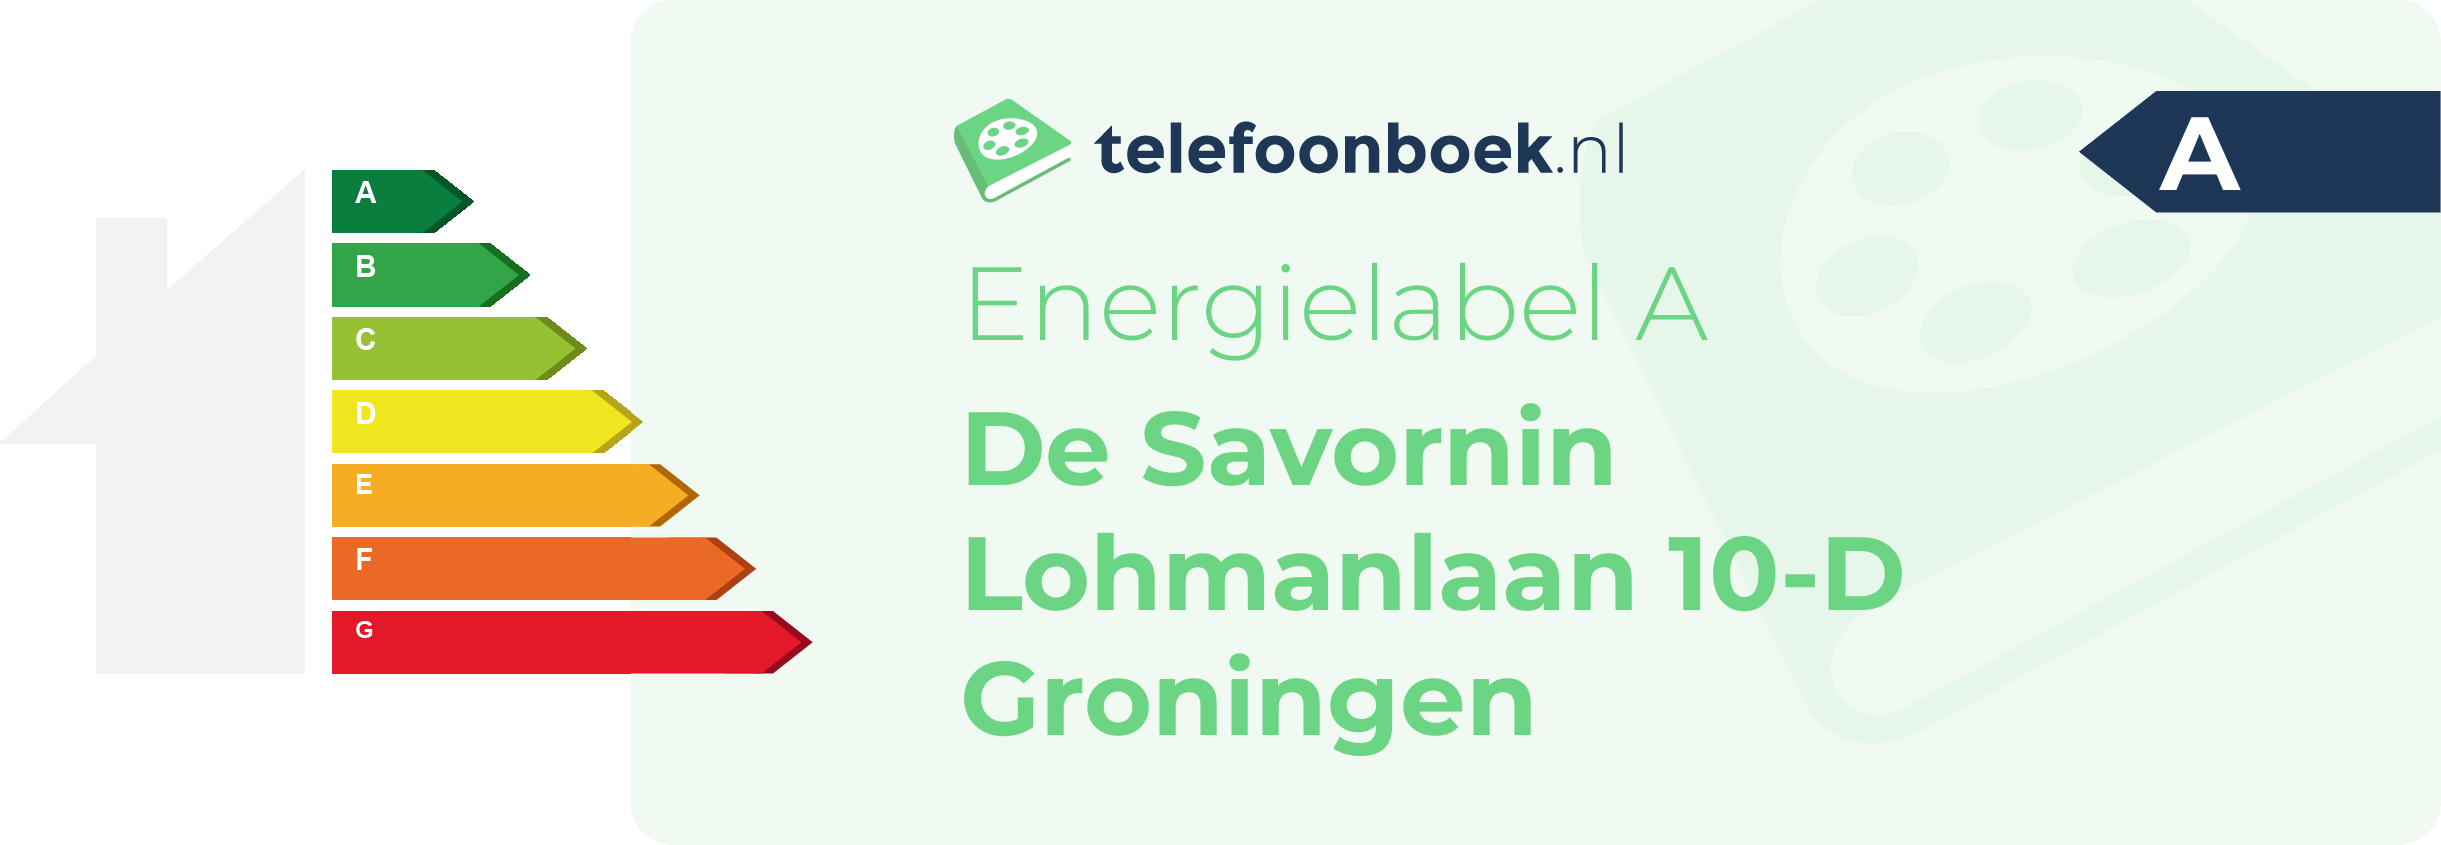 Energielabel De Savornin Lohmanlaan 10-D Groningen